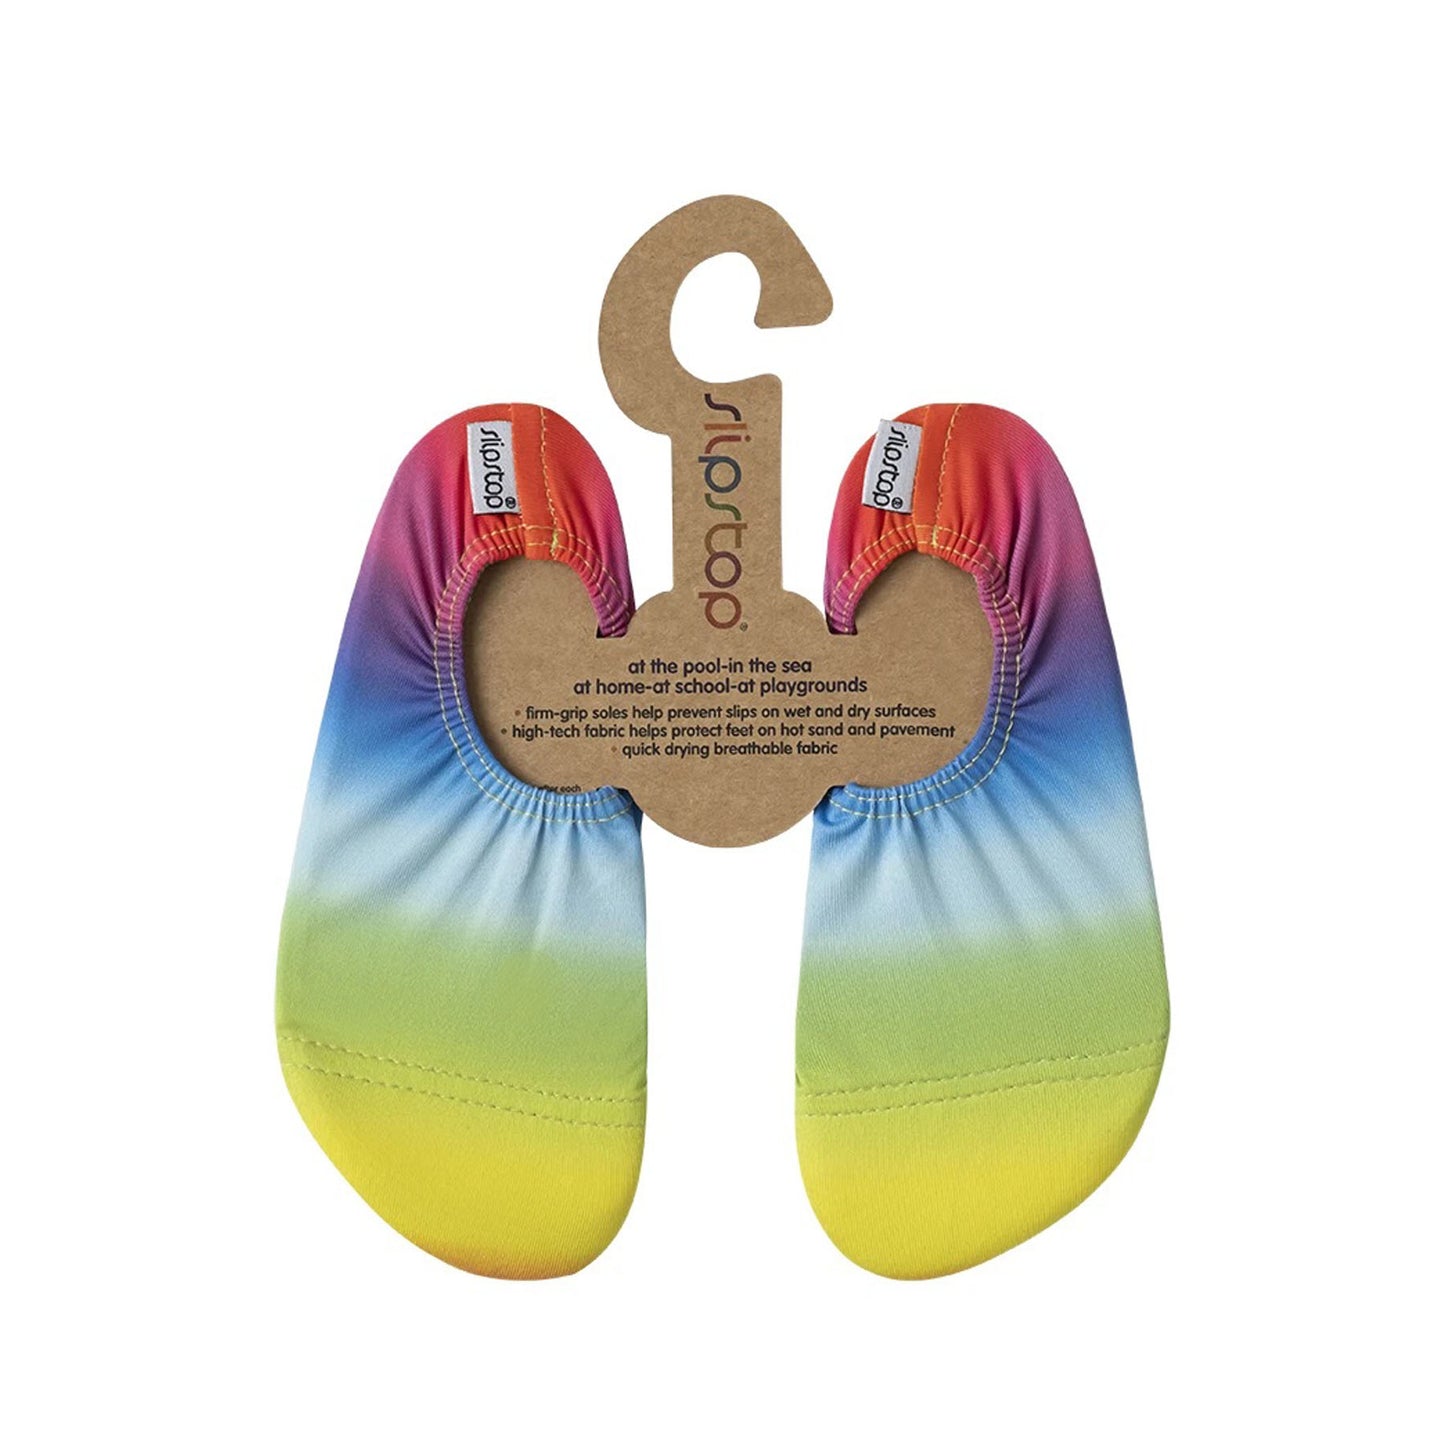 Slipstop Rainbow Junior Kaydırmaz Havuz ve Kız Çocuk Deniz Ayakkabısı SS21110340 MAVİ-SARI